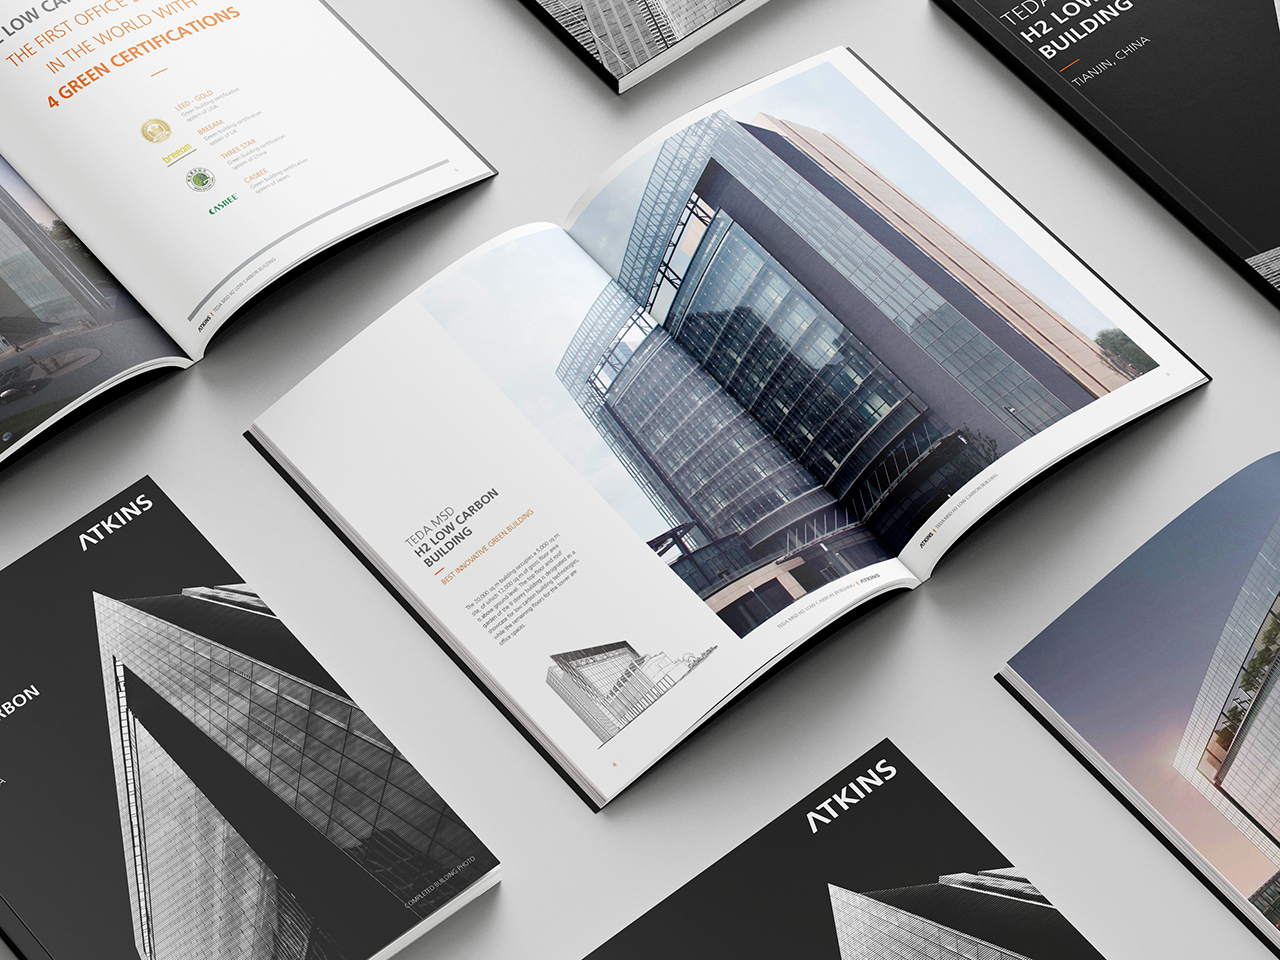 国际建筑品牌 设计竞赛项目宣传册设计图10